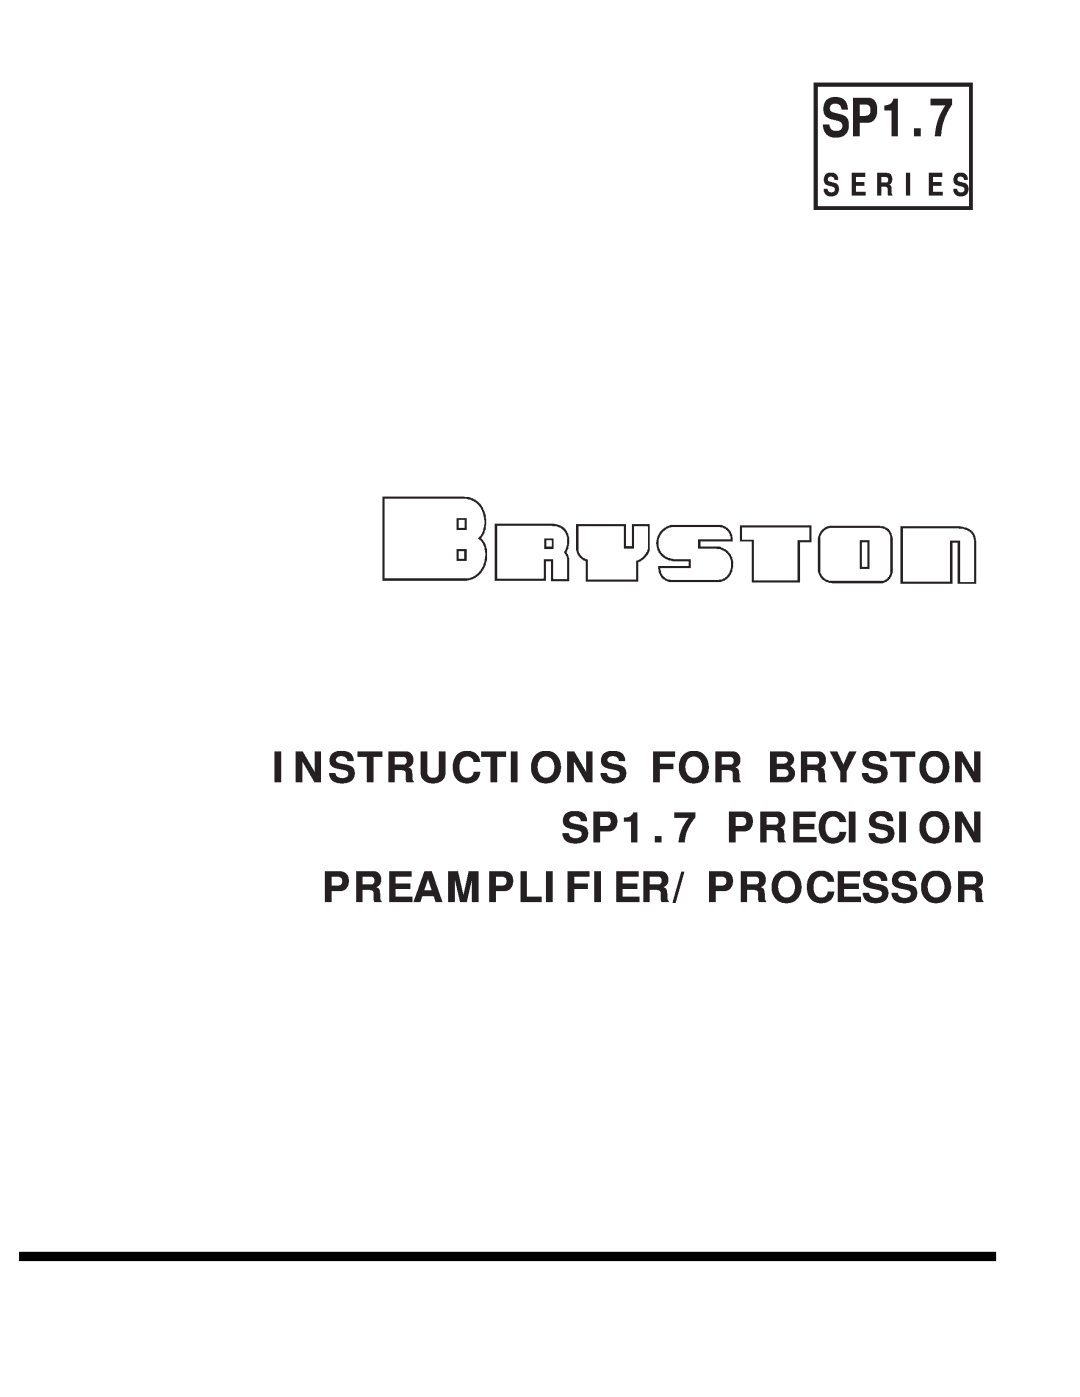 Bryston SP1.7 manual S E R I E S 